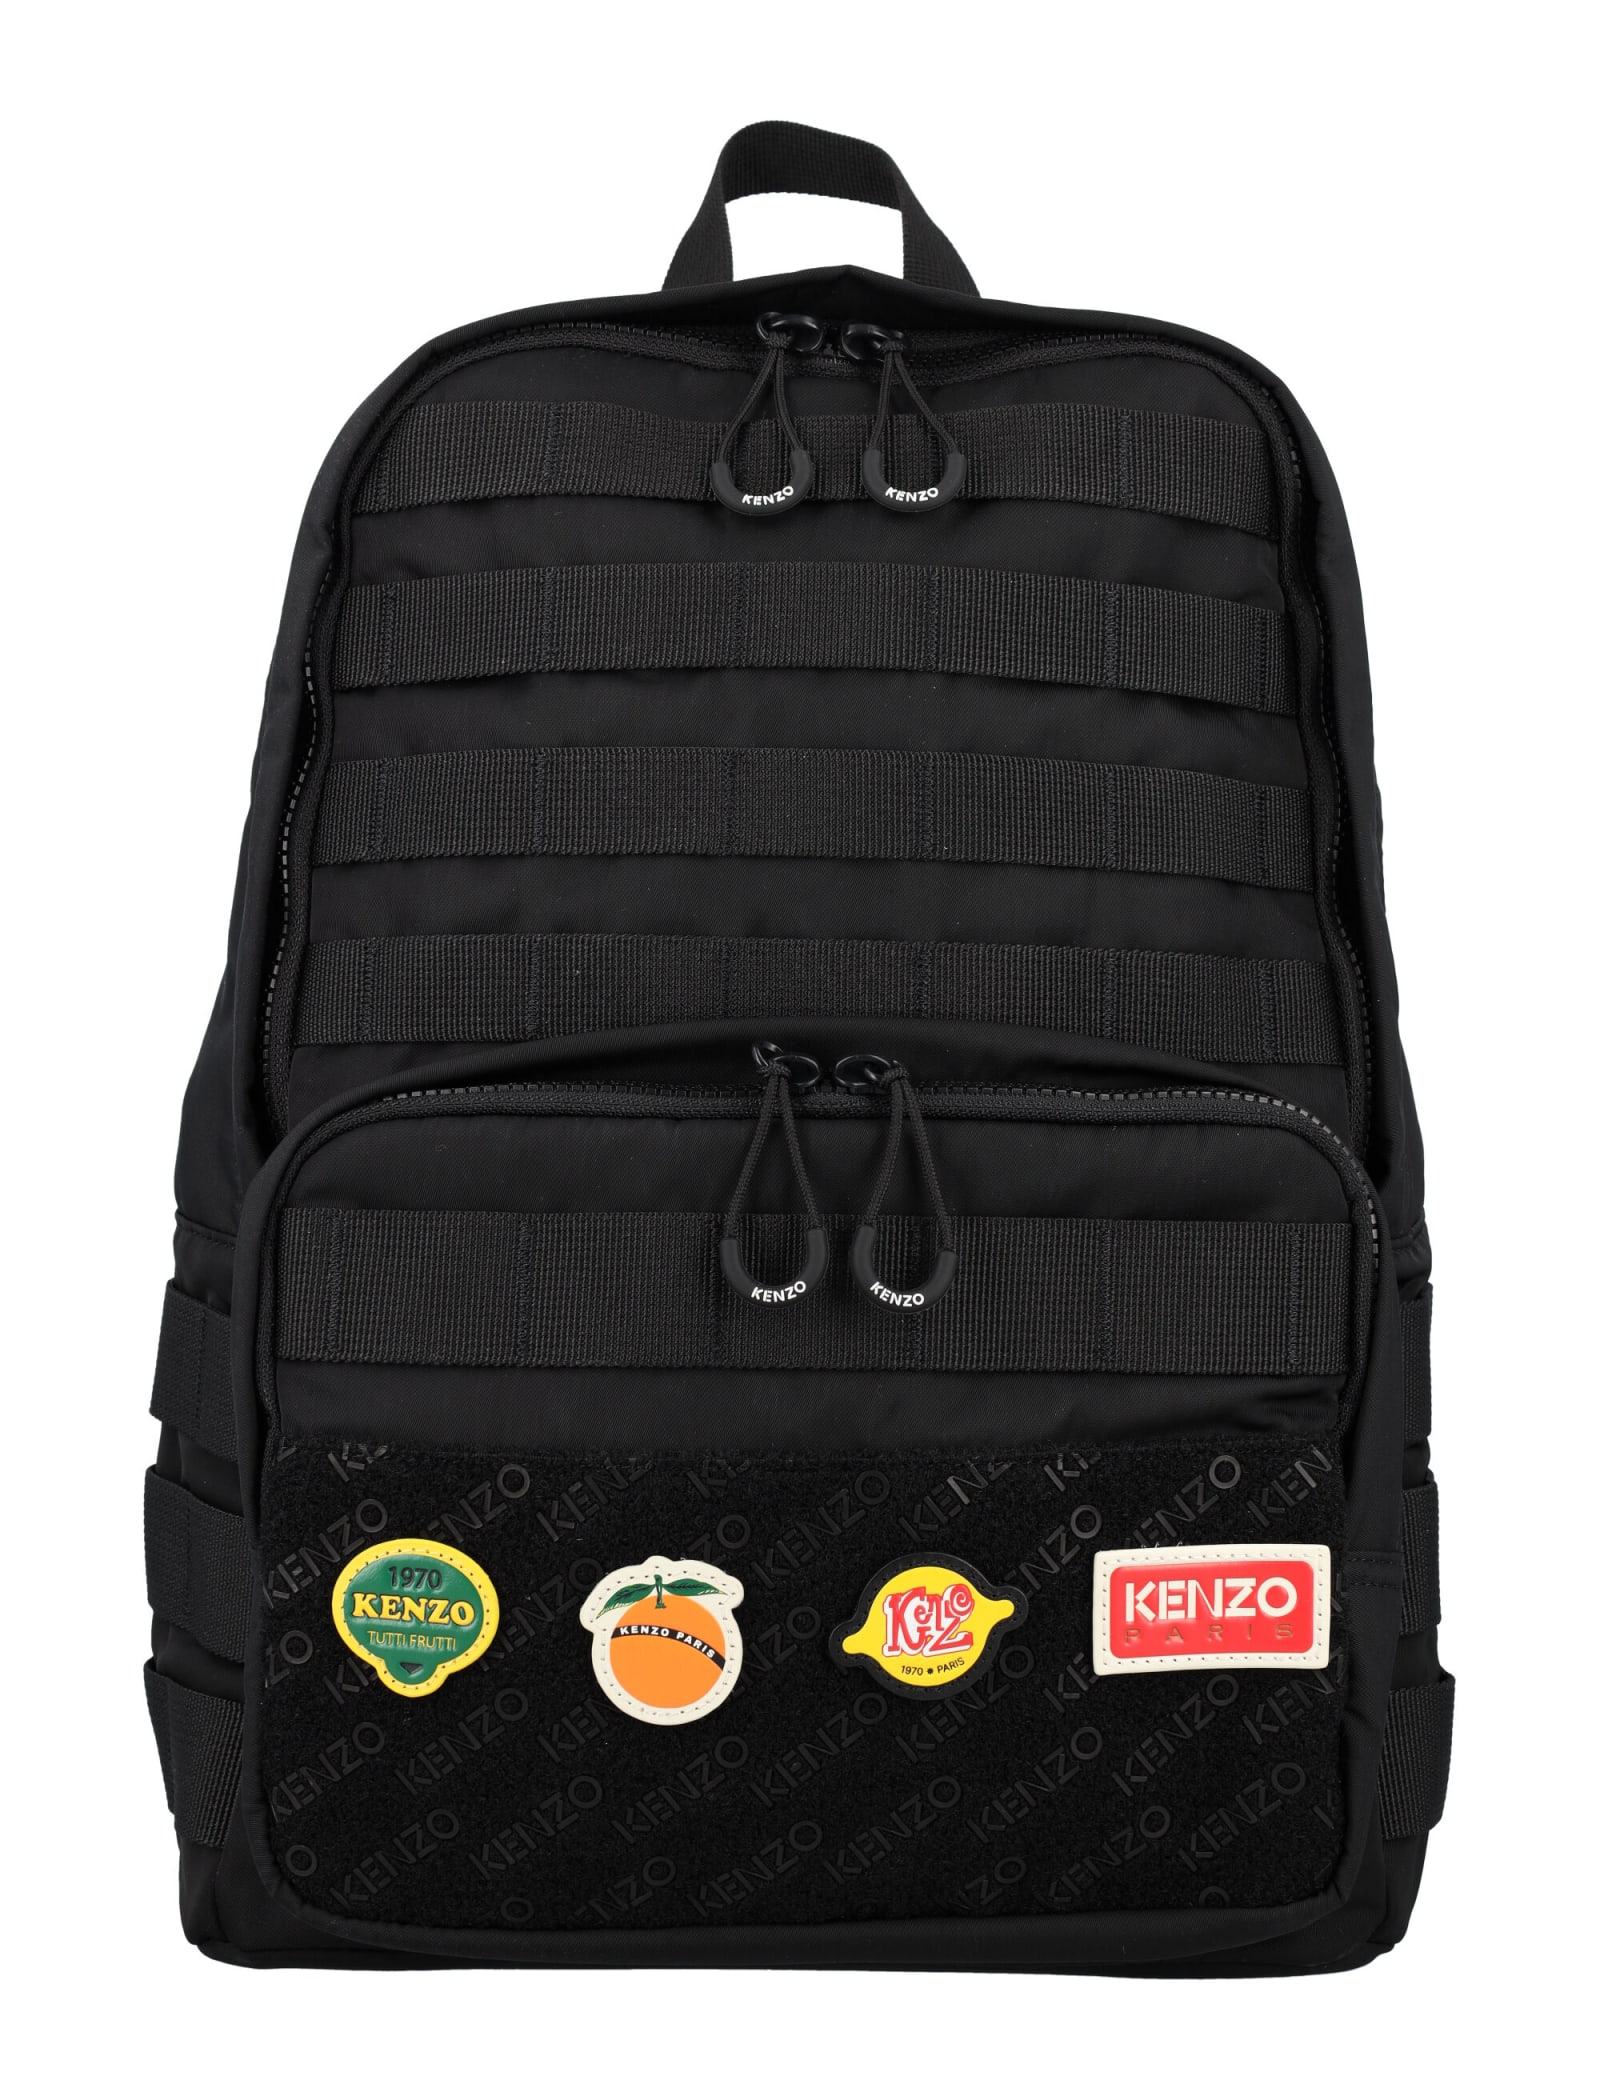 Kenzo Backpack In Black